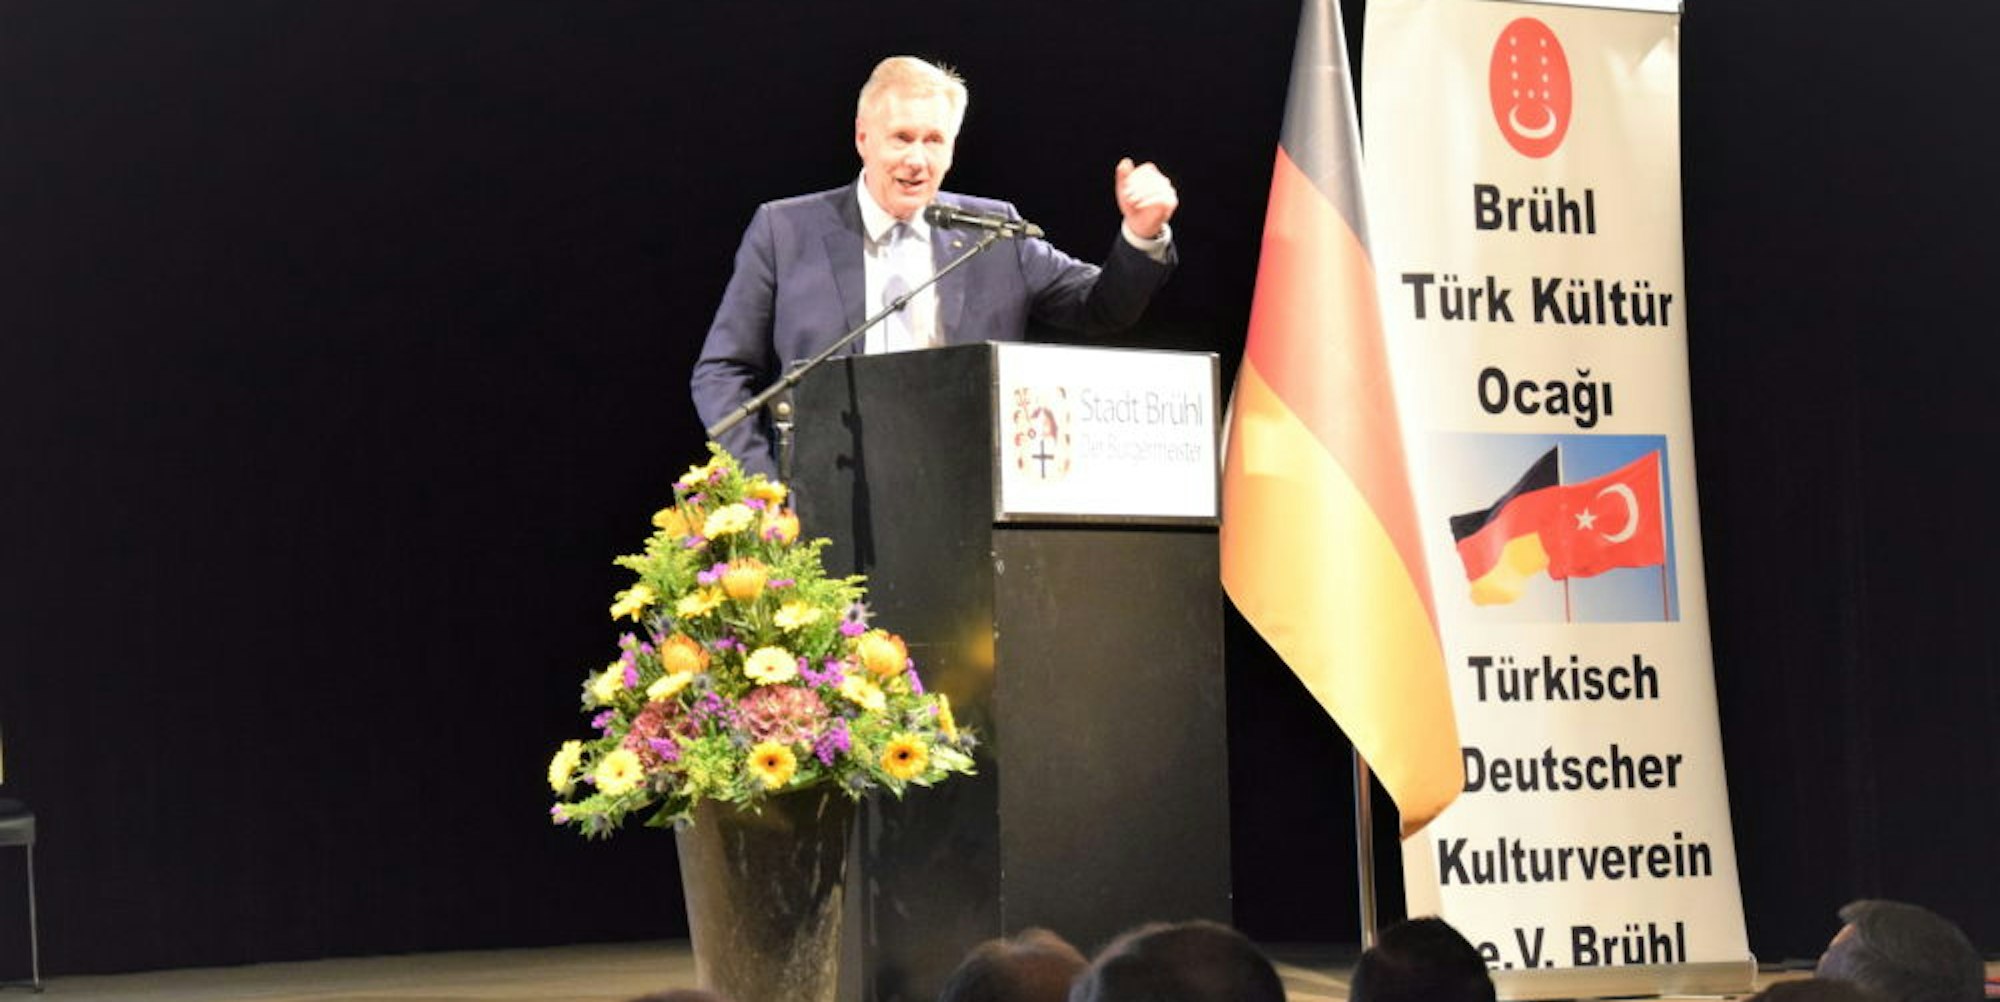 Der ehemalige Bundespräsident Christian Wulff hielt einen Vortrag über den gesellschaftlichen Zusammenhalt im Land.